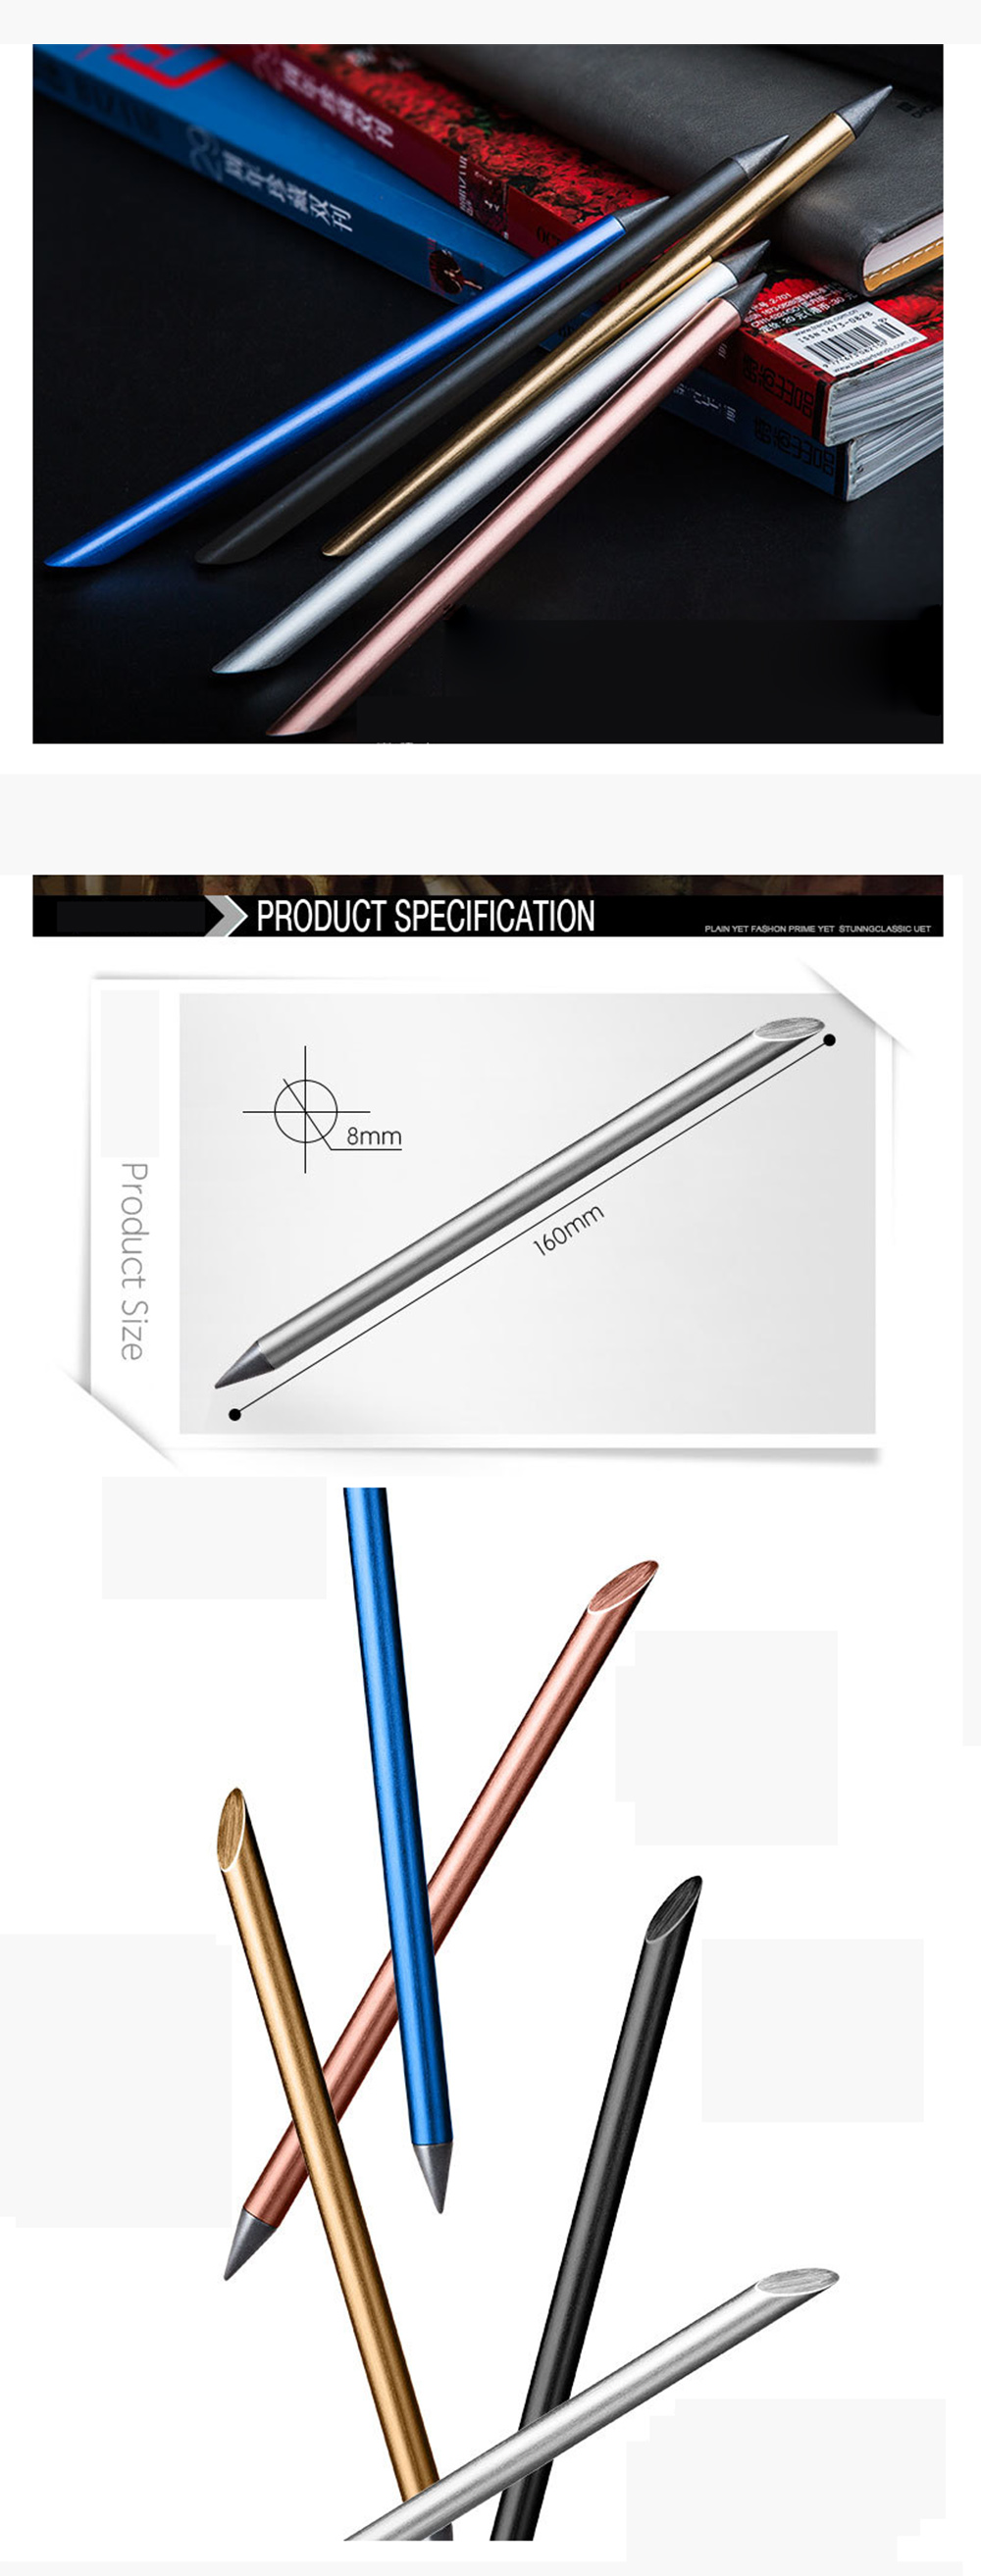 Beta-Pen-Free-Ink-Pen-Creative-Metal-Signature-Gel-Pen-Infinite-Loop-Using-Pencil-1445862-1